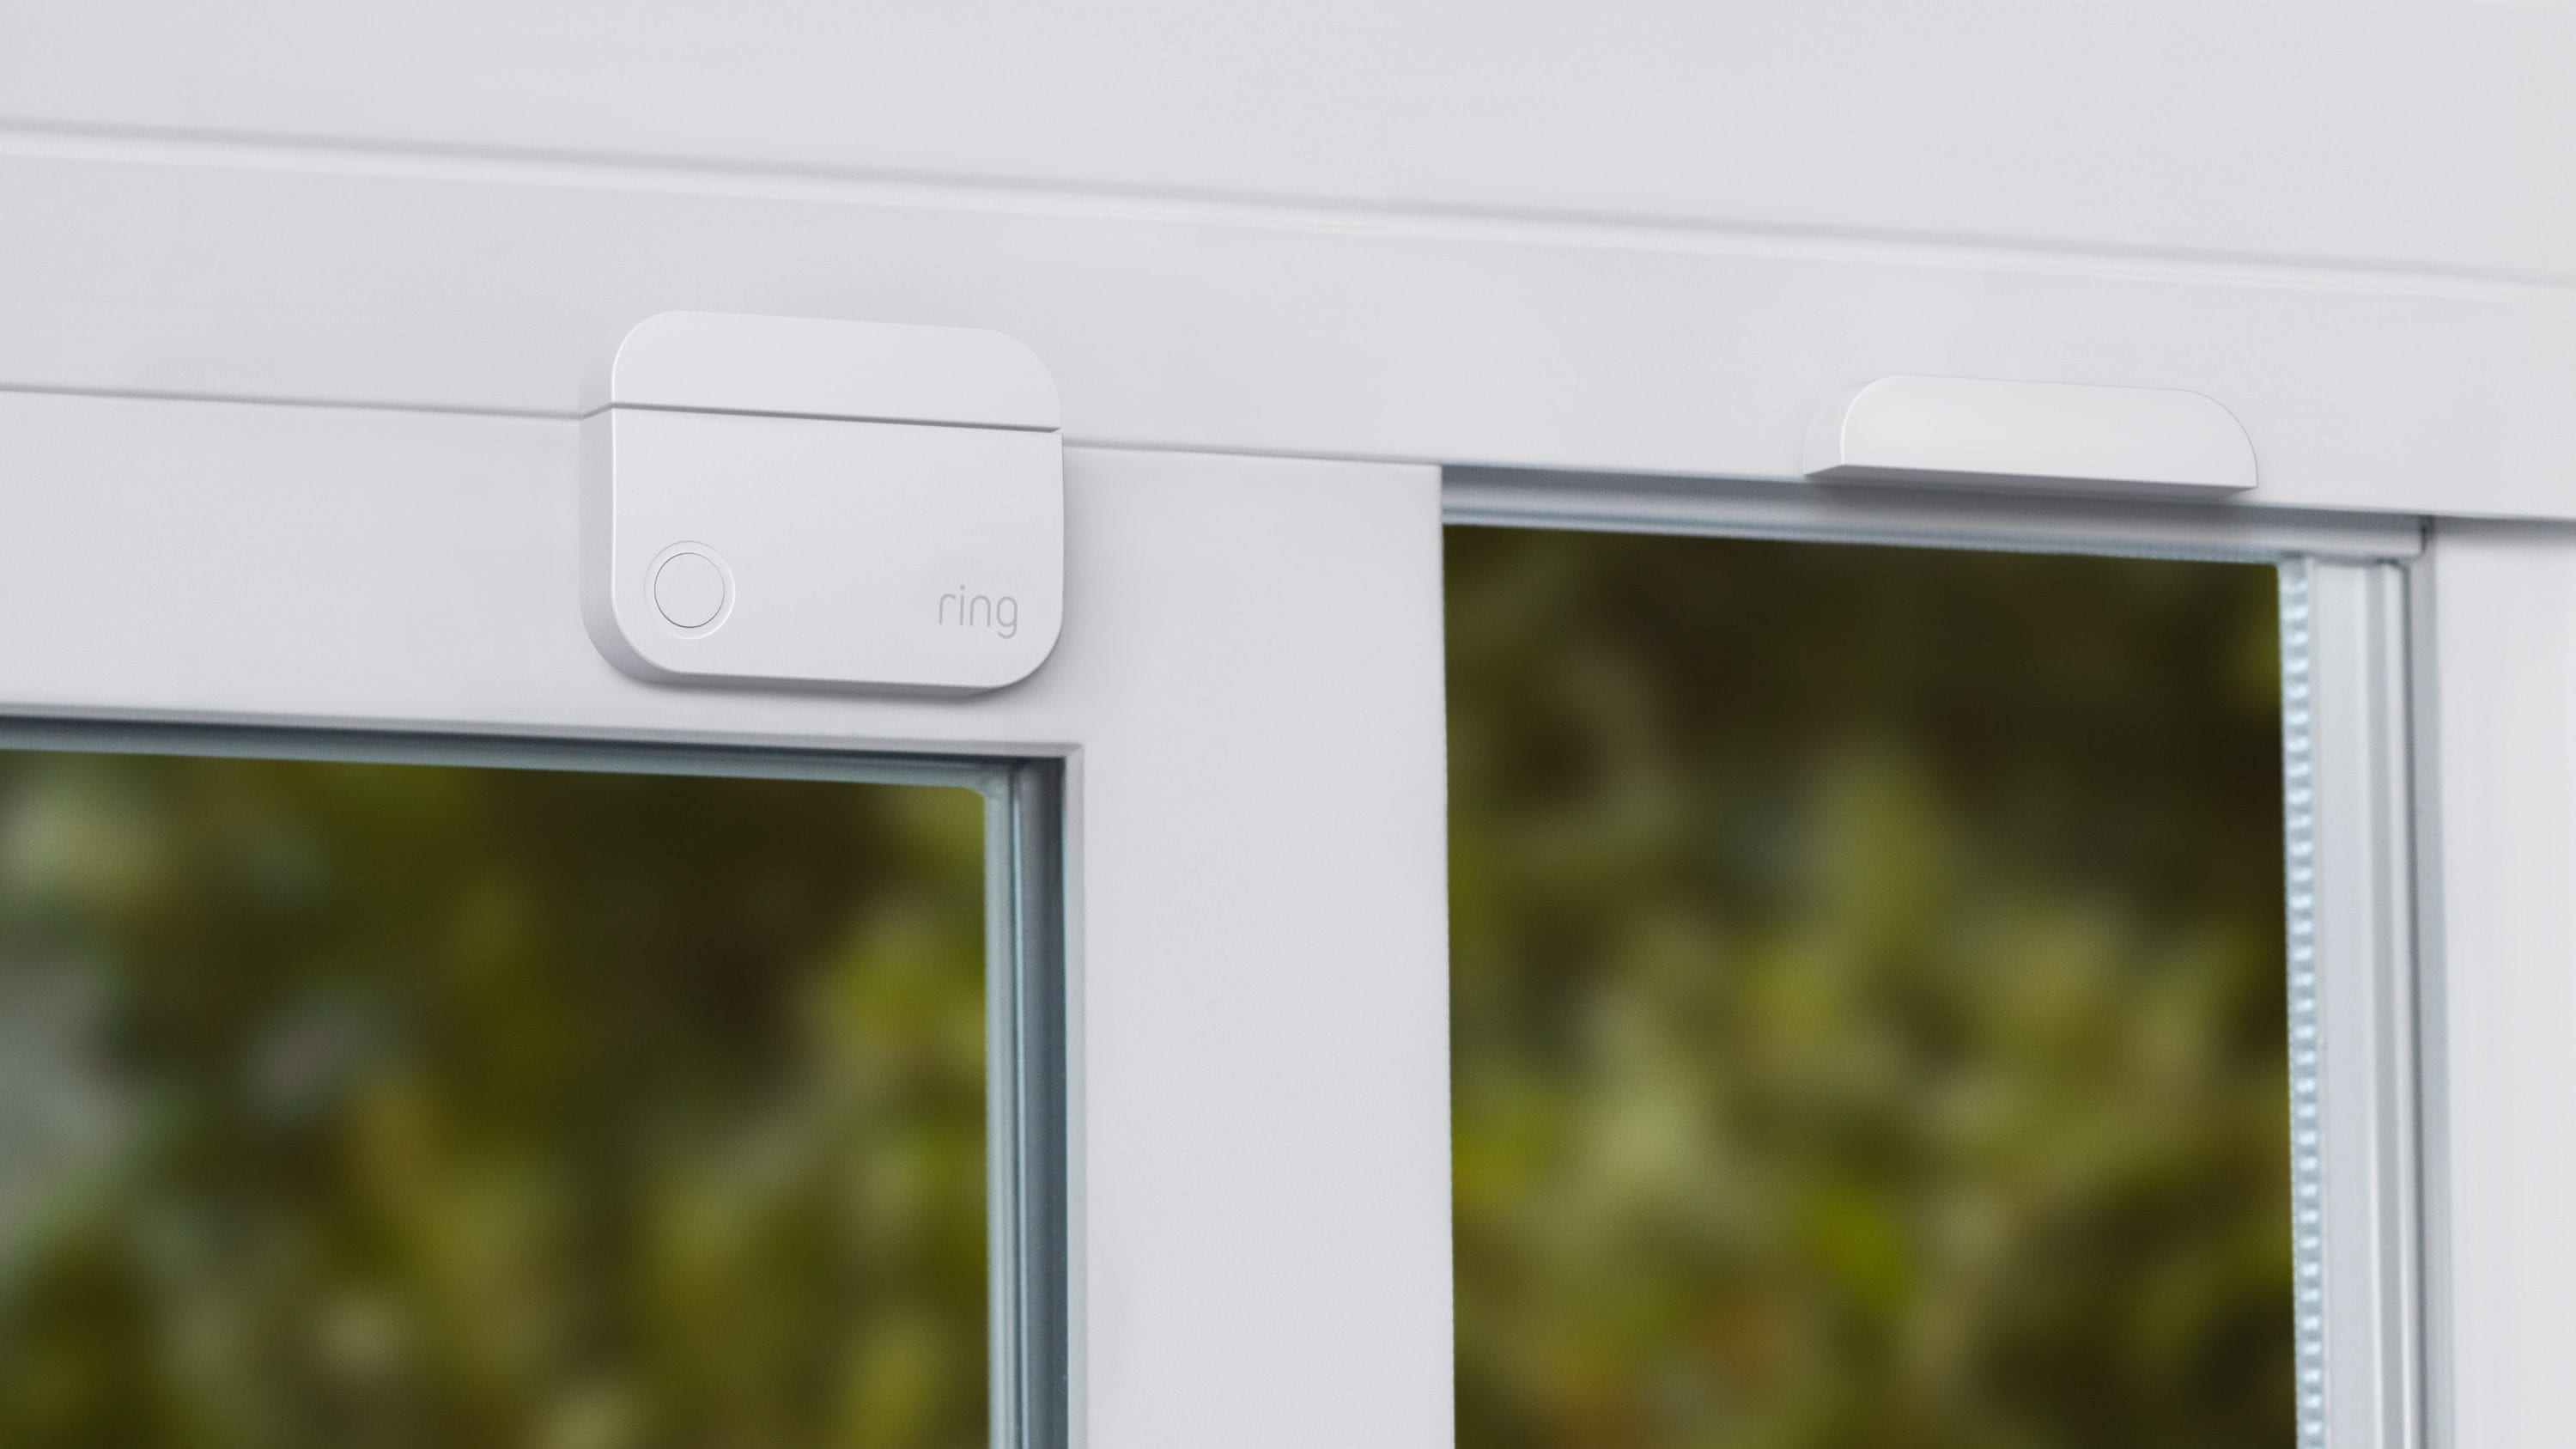 Ring Alarm Window and Door Contact Sensor 6-Pack (2nd Gen)